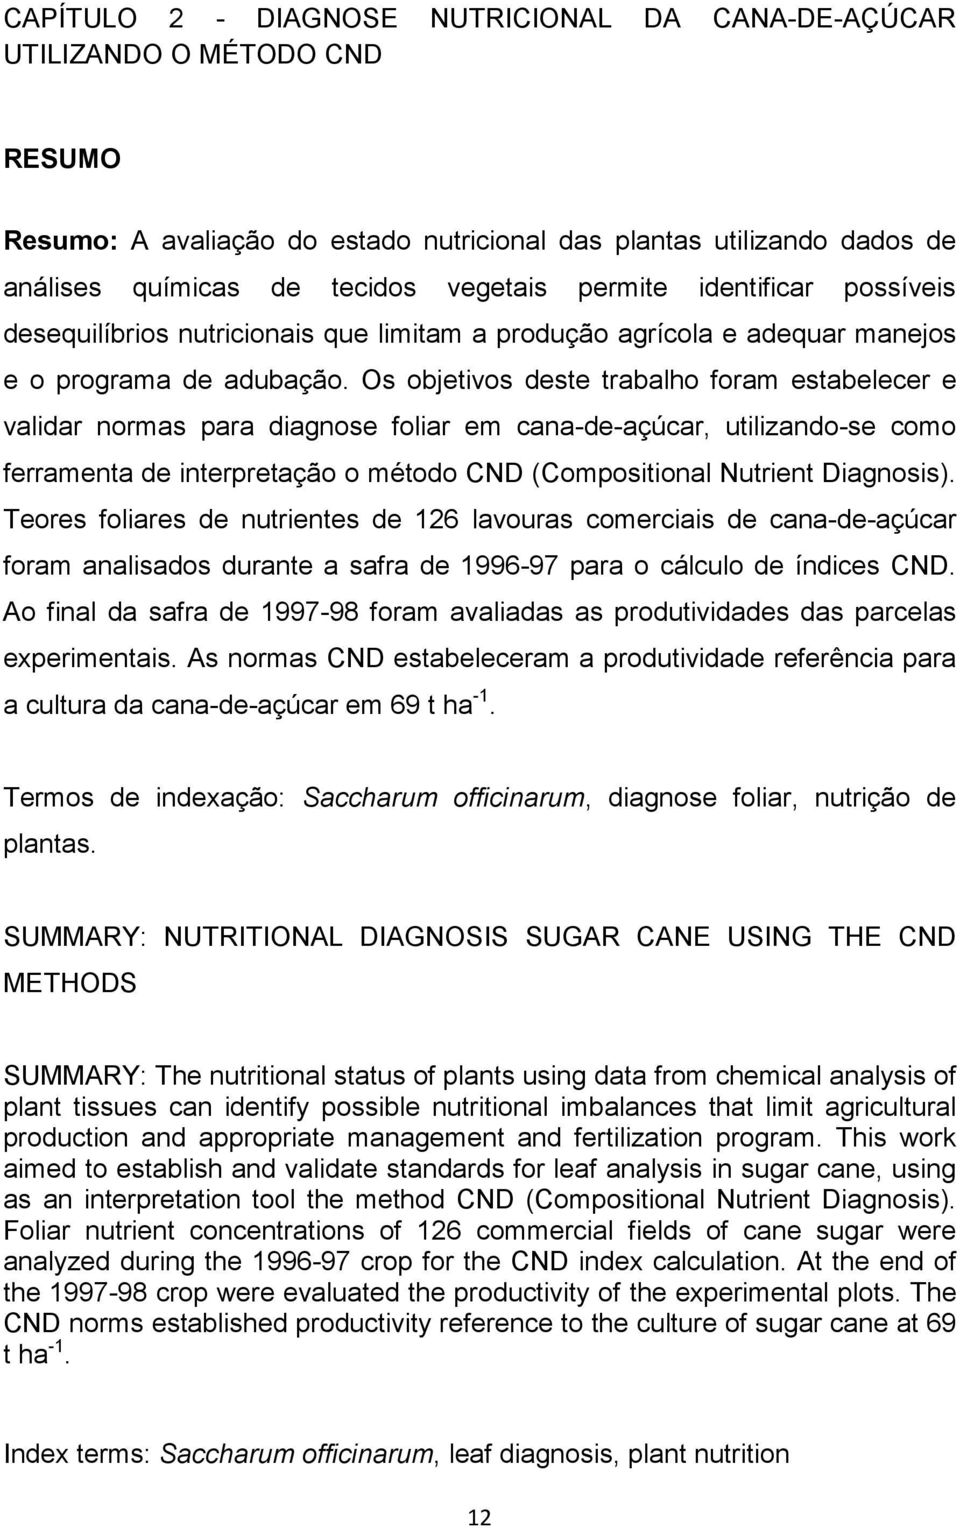 Os objetivos deste trabalho foram estabelecer e validar normas para diagnose foliar em cana-de-açúcar, utilizando-se como ferramenta de interpretação o método CND (Compositional Nutrient Diagnosis).